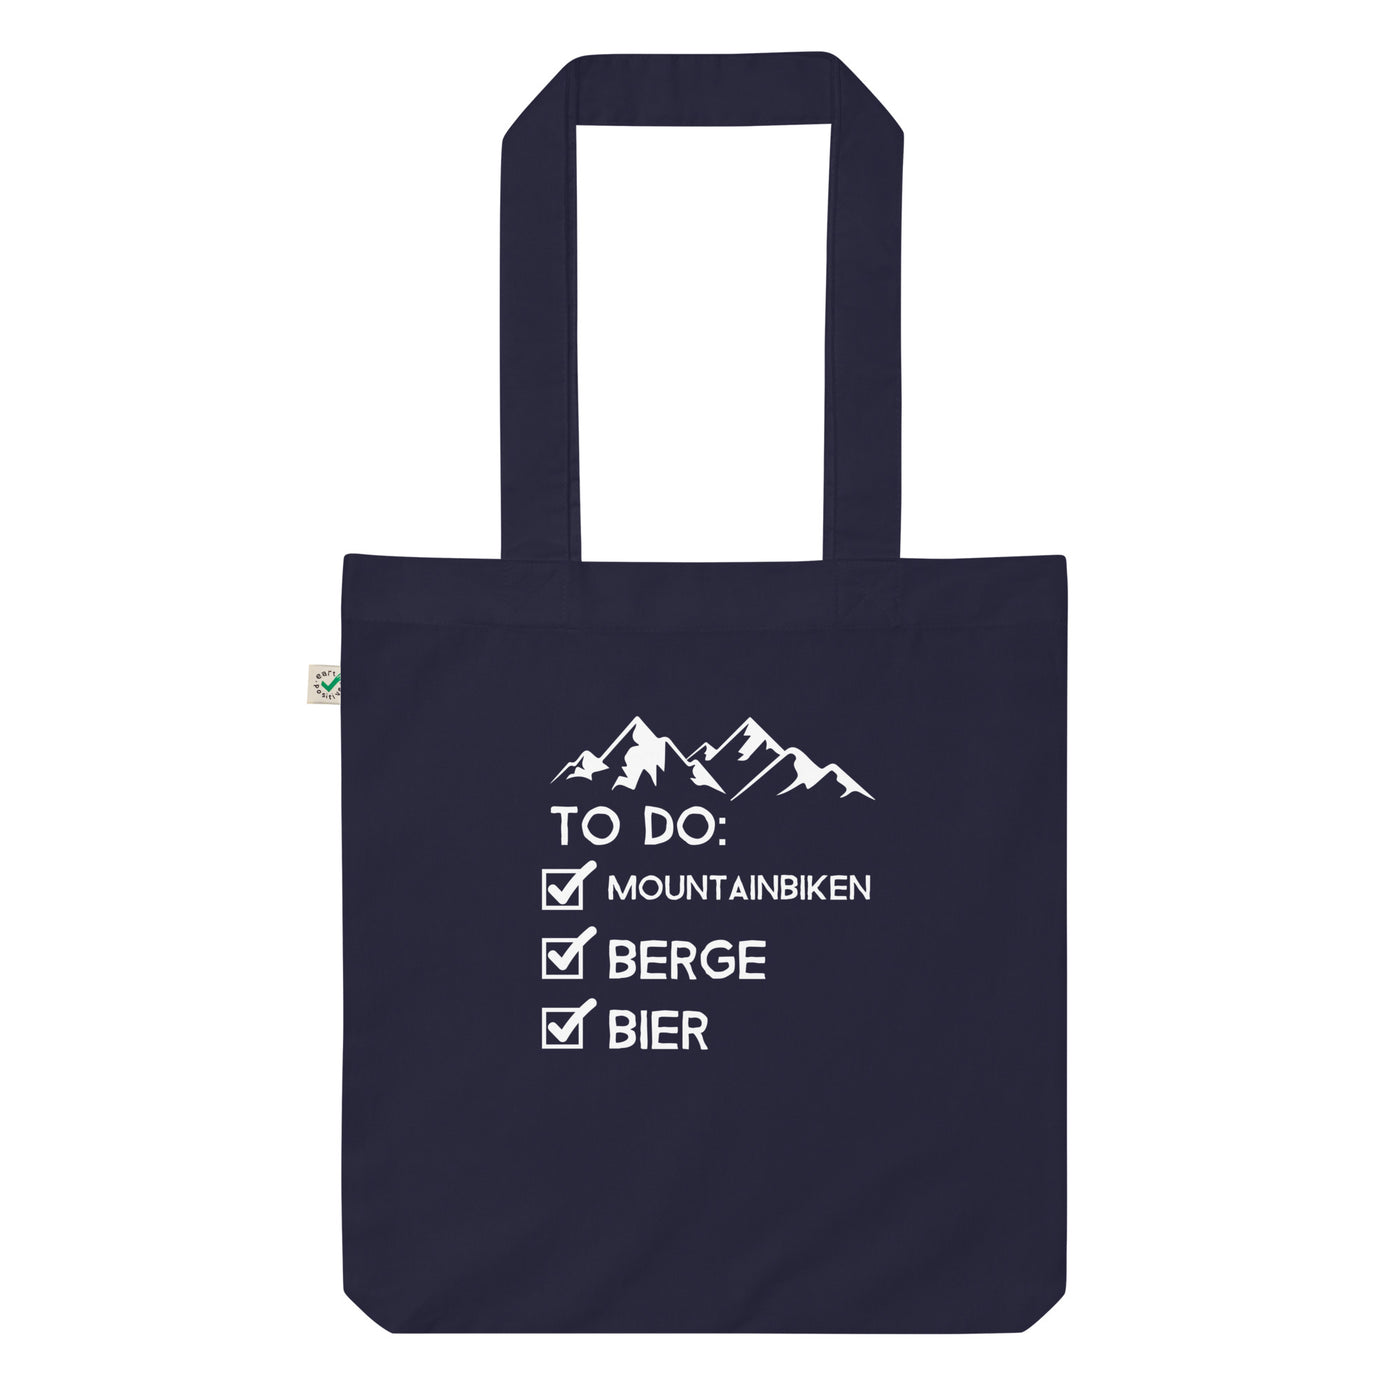 To Do Liste - Mountainbiken, Berge, Bier - (M) - Organic Einkaufstasche Navy